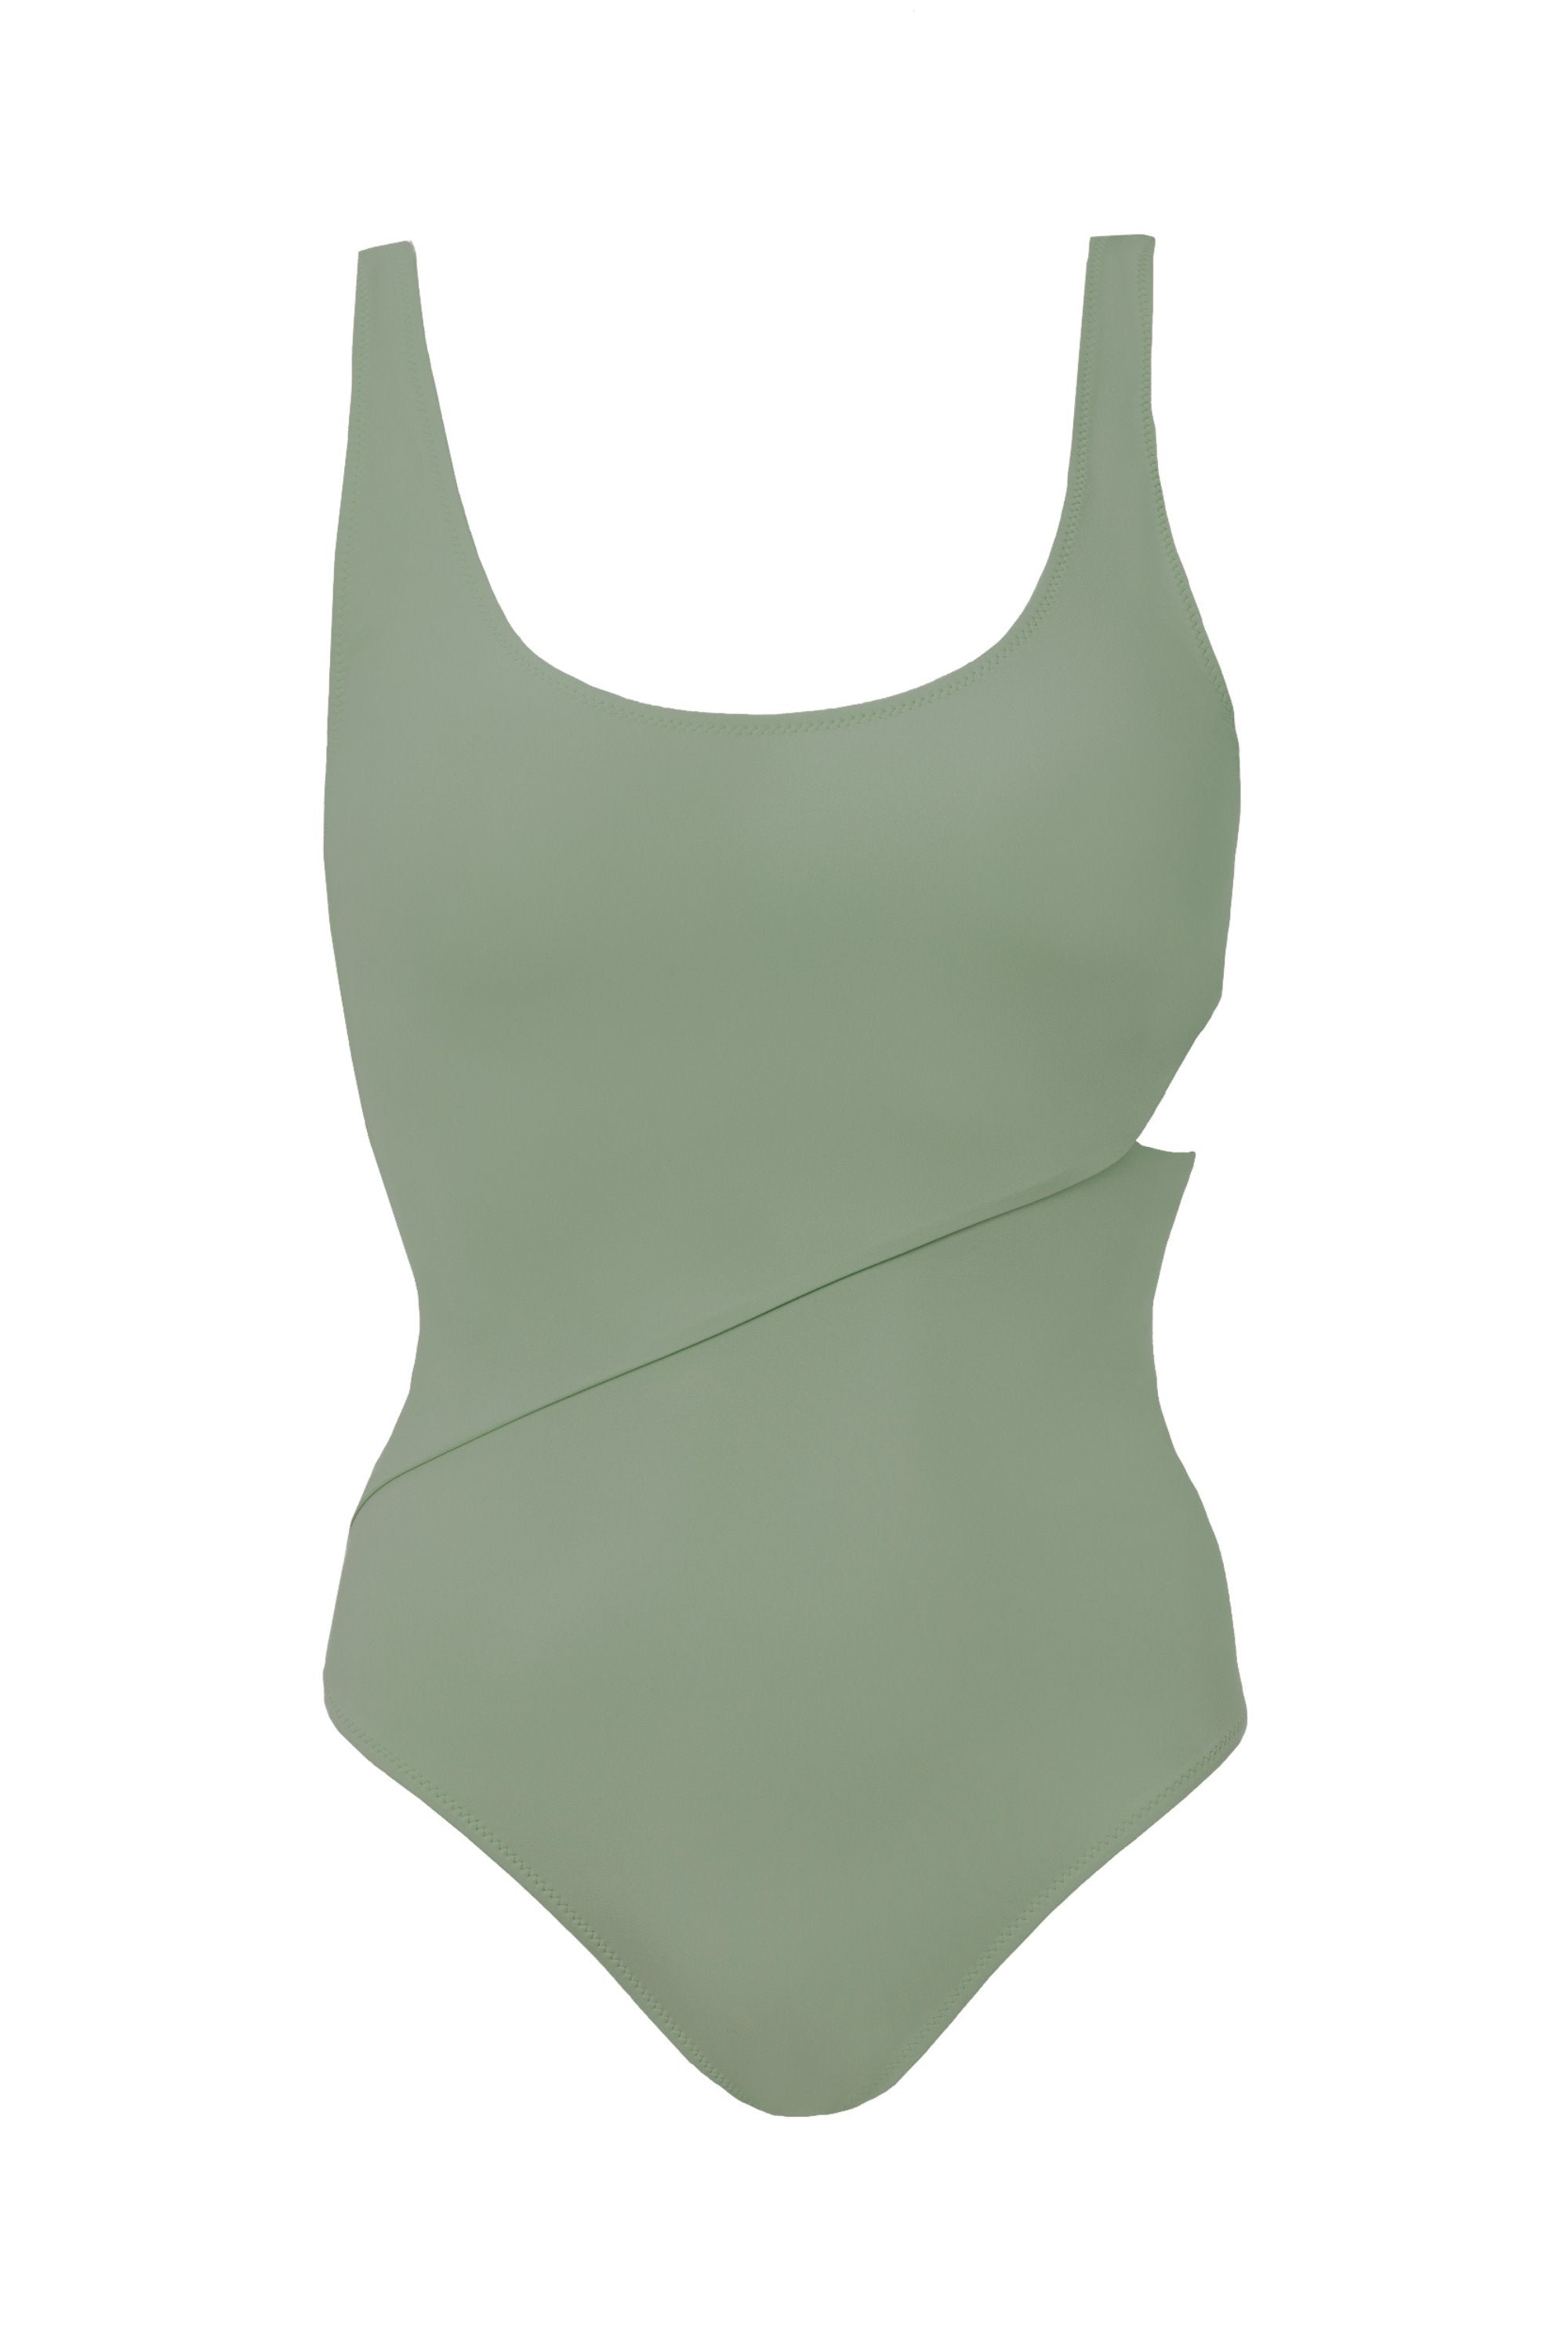 Mischa in Sage Green One-Piece Swimsuit Arloe 